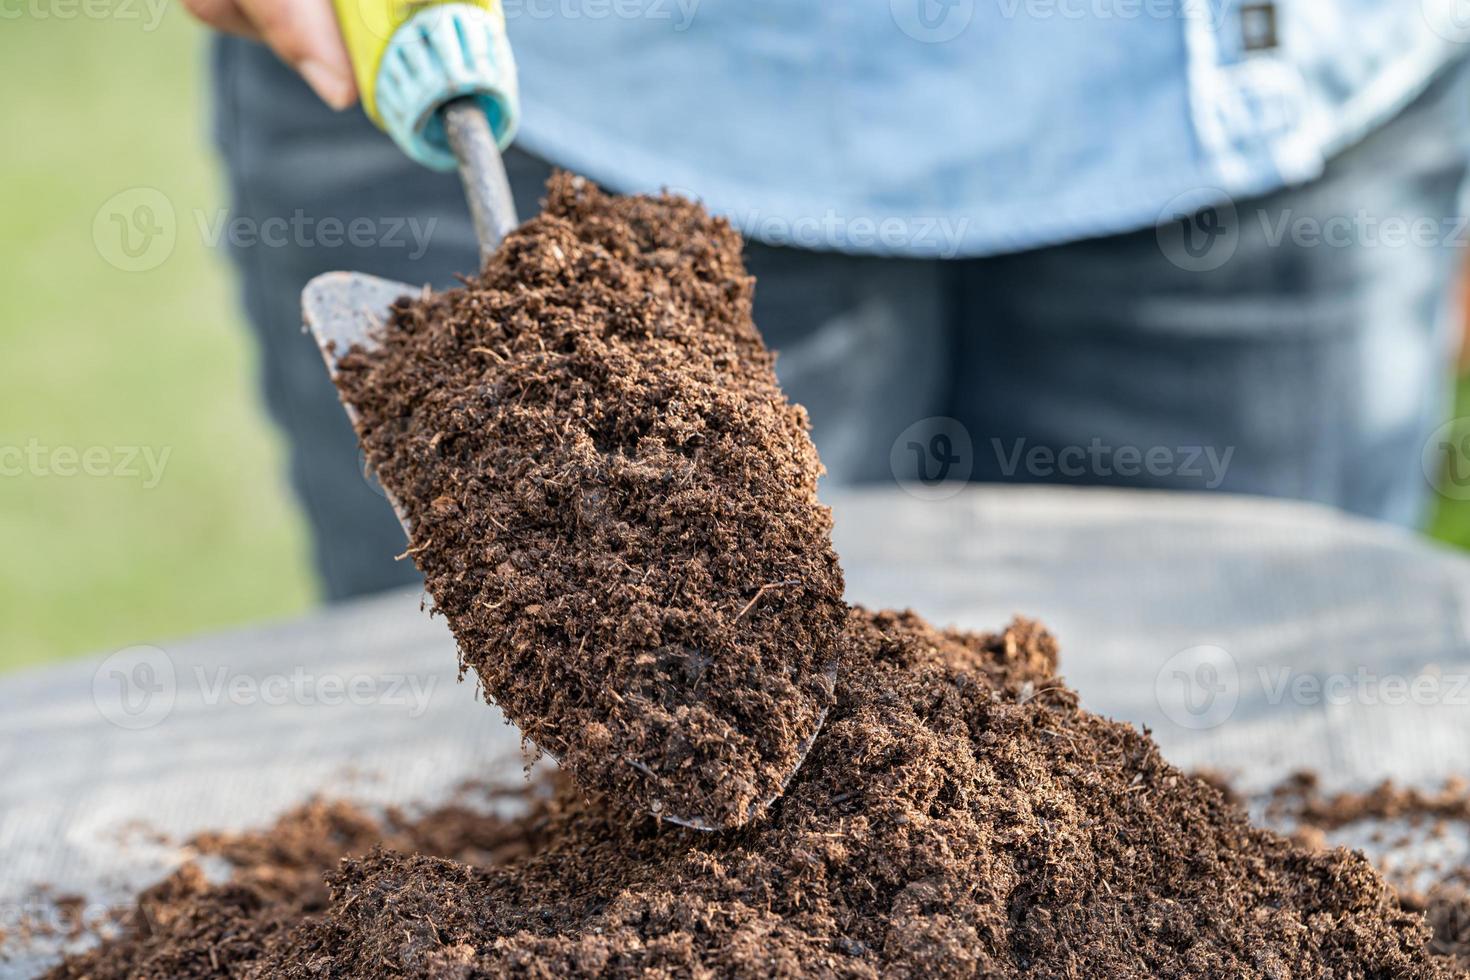 main tenant la matière organique de mousse de tourbe améliorer le sol pour l'agriculture culture de plantes biologiques, concept d'écologie. photo